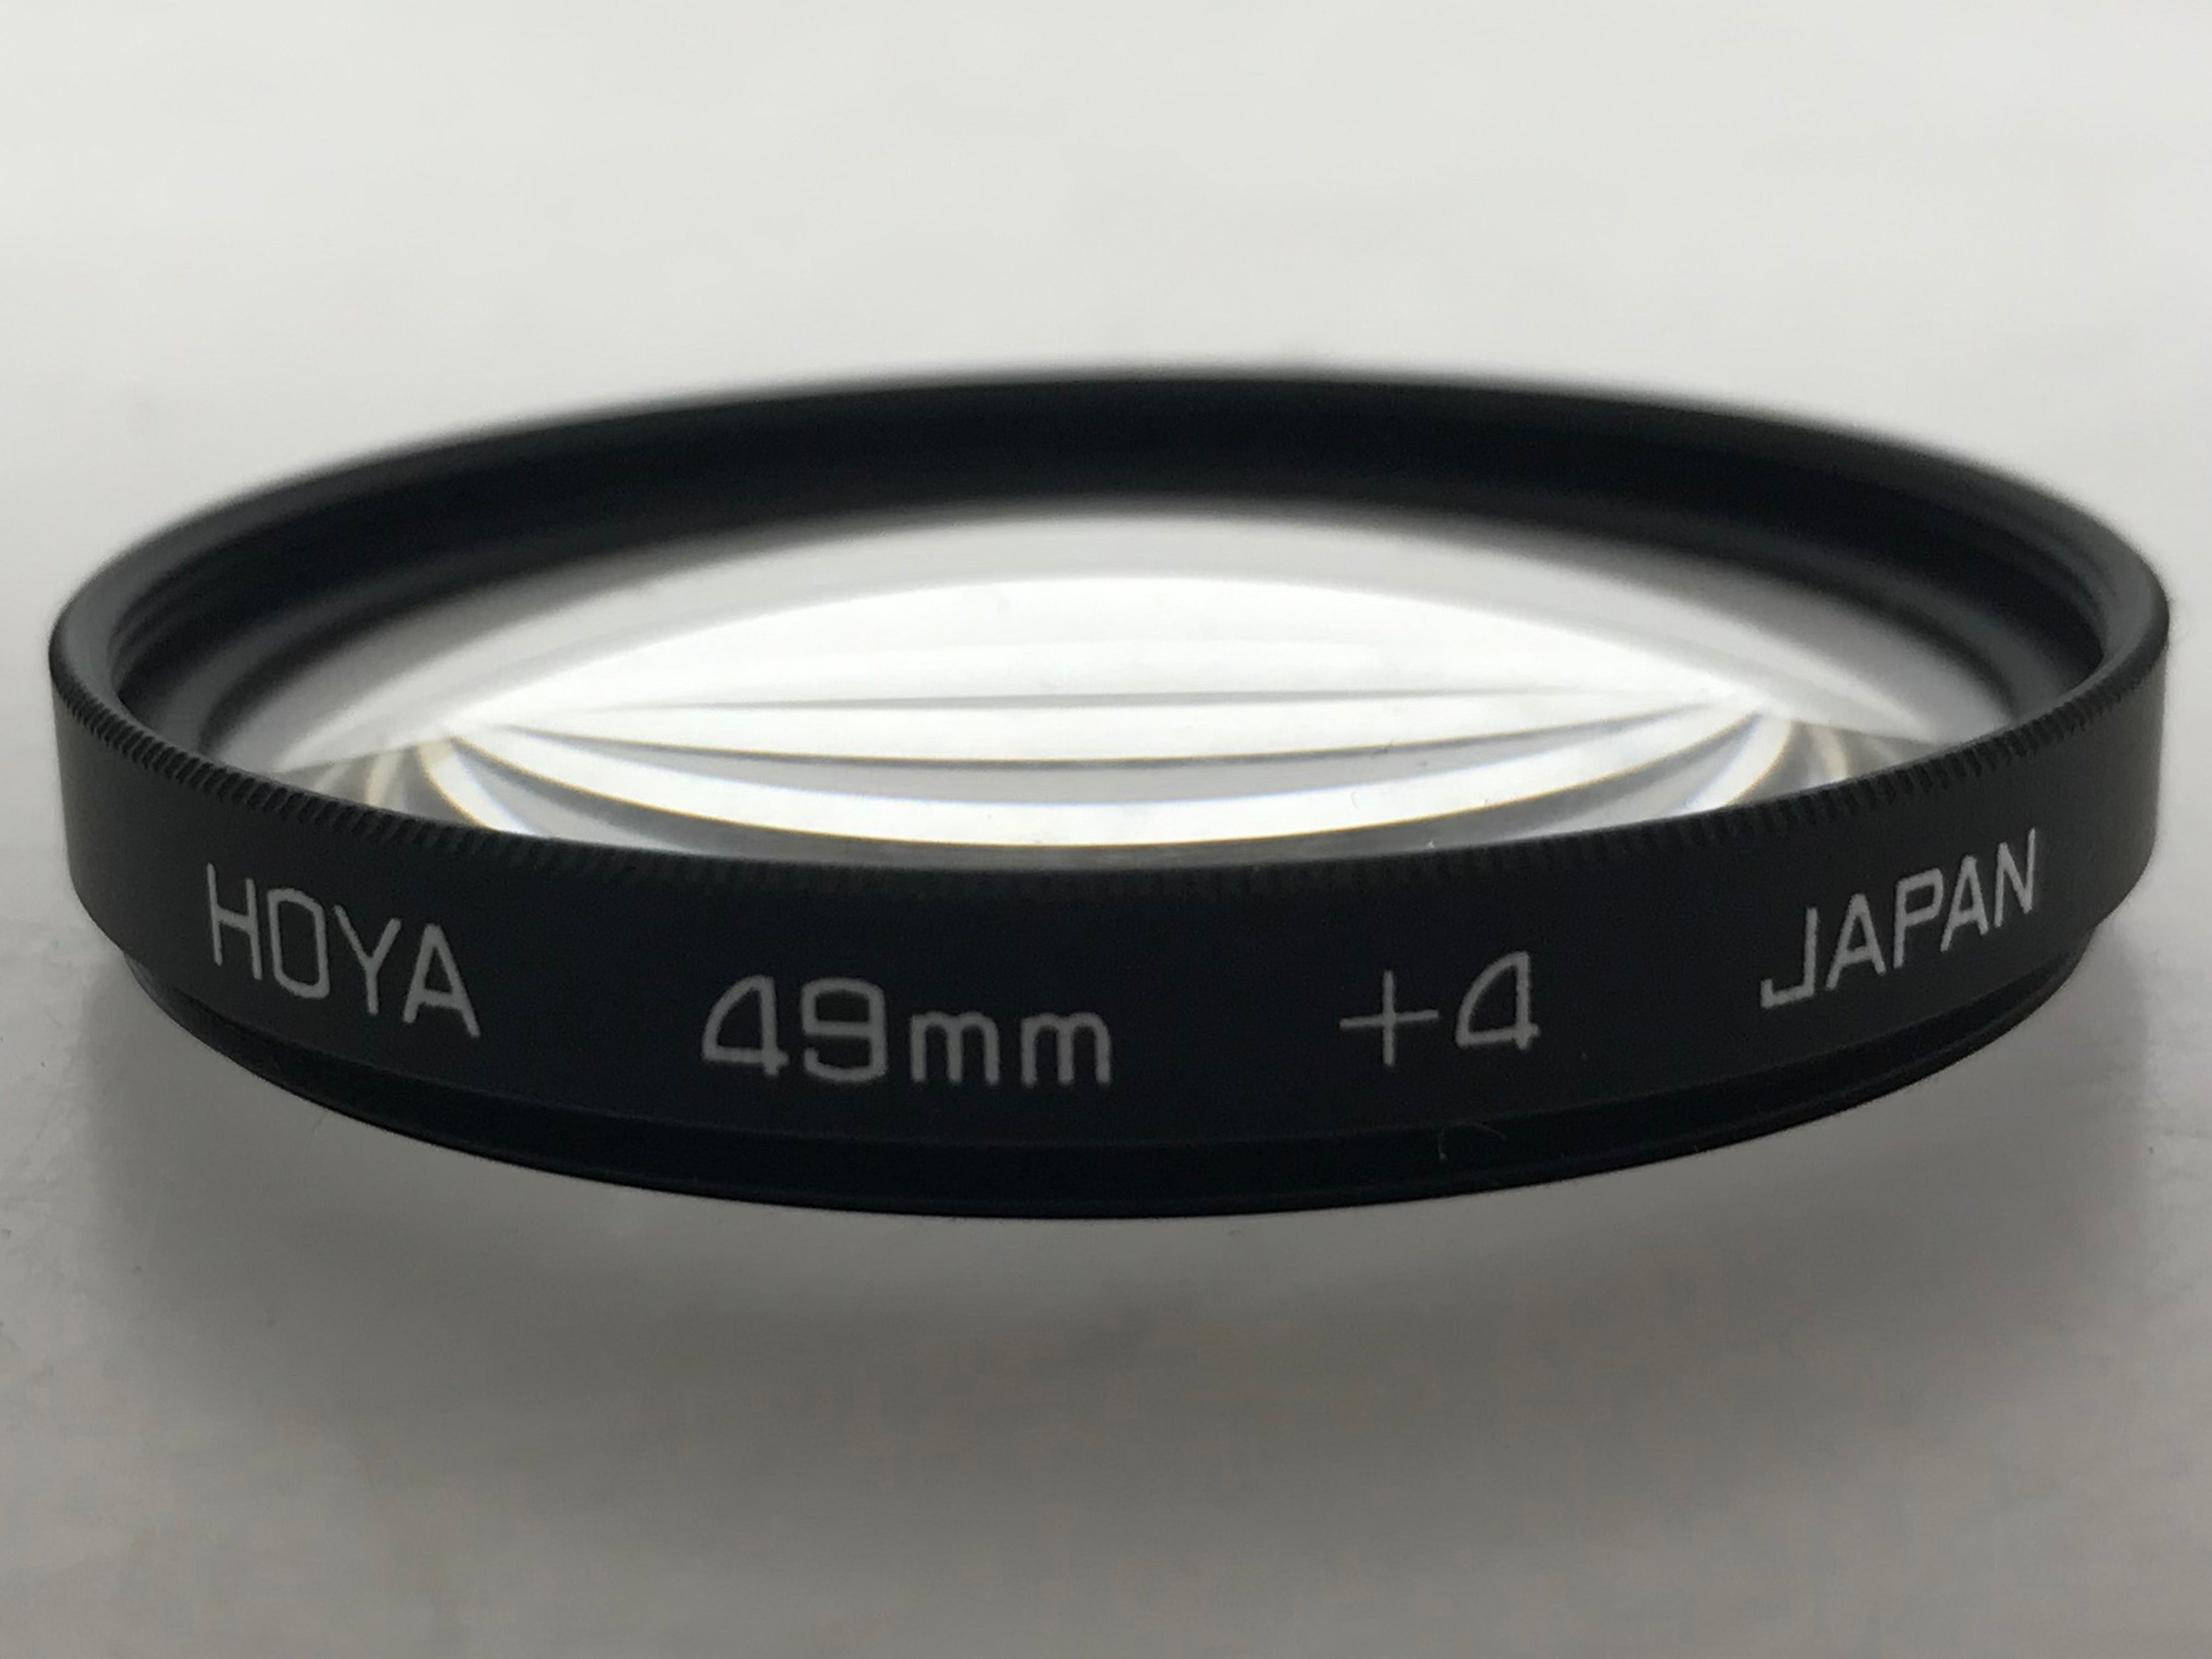 Hoya 49mm Lens Filter Set